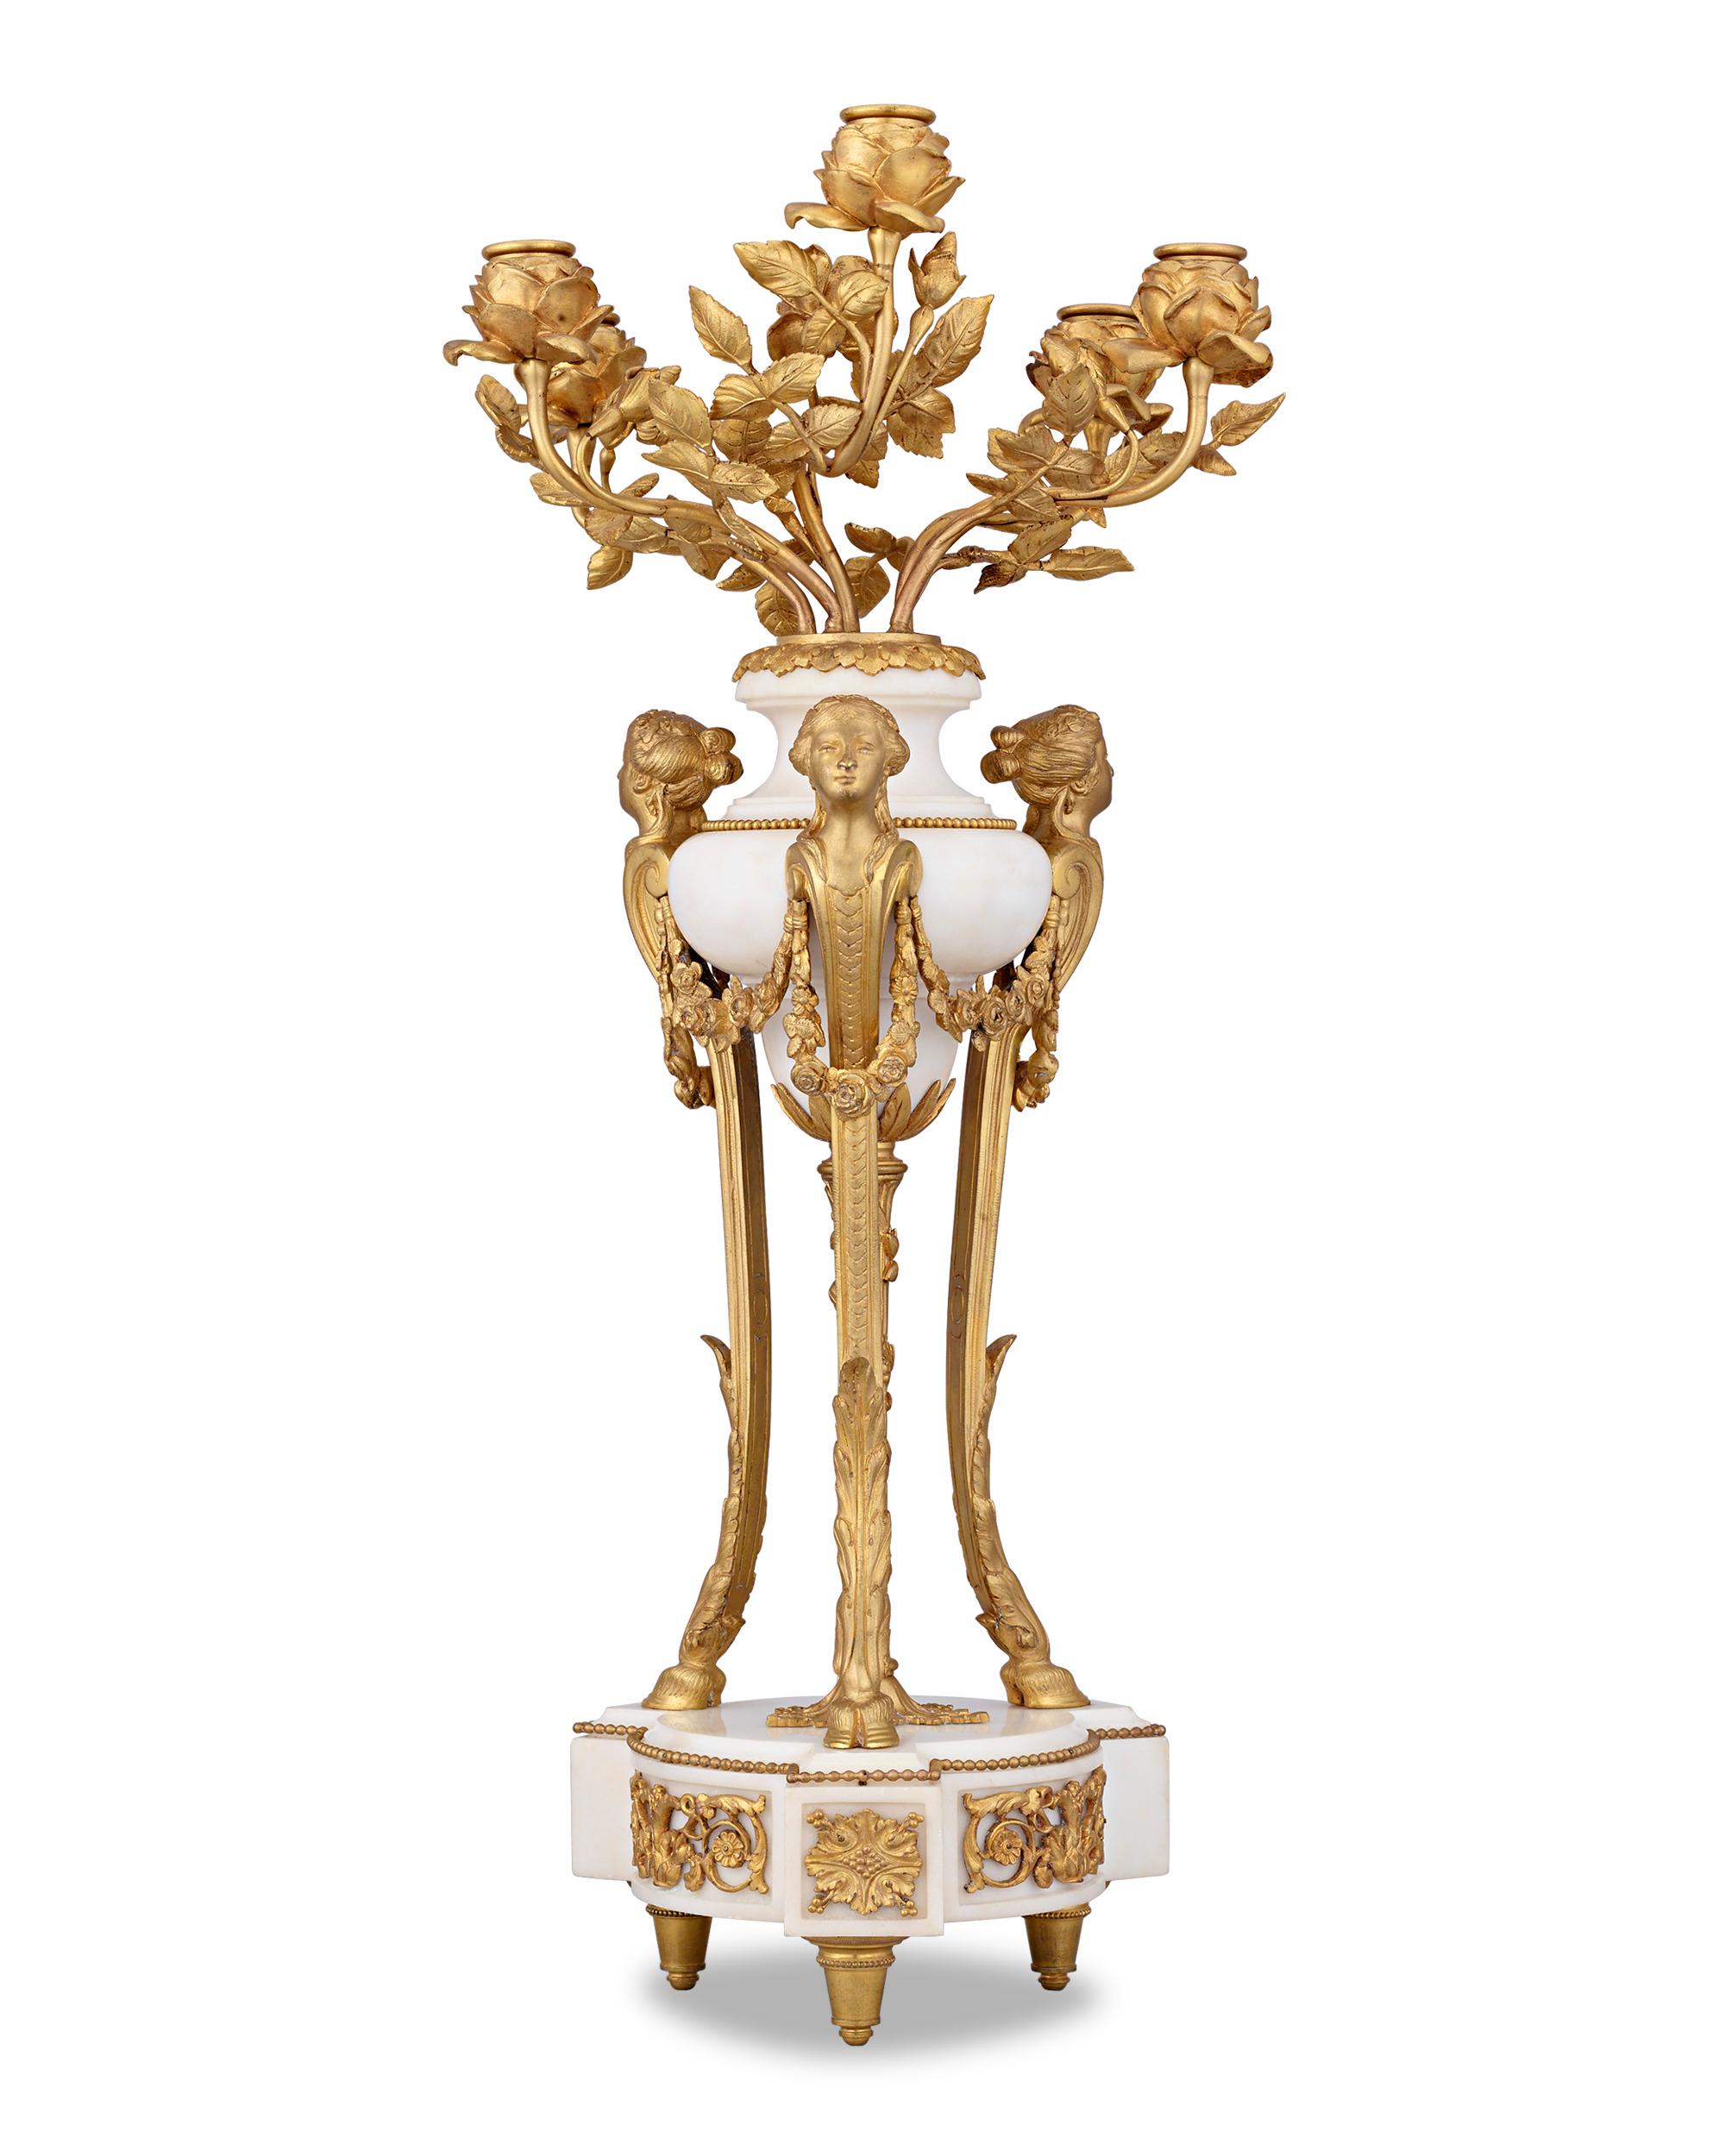 Cette paire exceptionnelle de candélabres du Second Empire français illustre la grandeur et l'exubérance de cette époque décorative. Réalisées en bronze doré et en marbre blanc, ces lampes sont conçues dans le style néoclassique, avec des feuilles